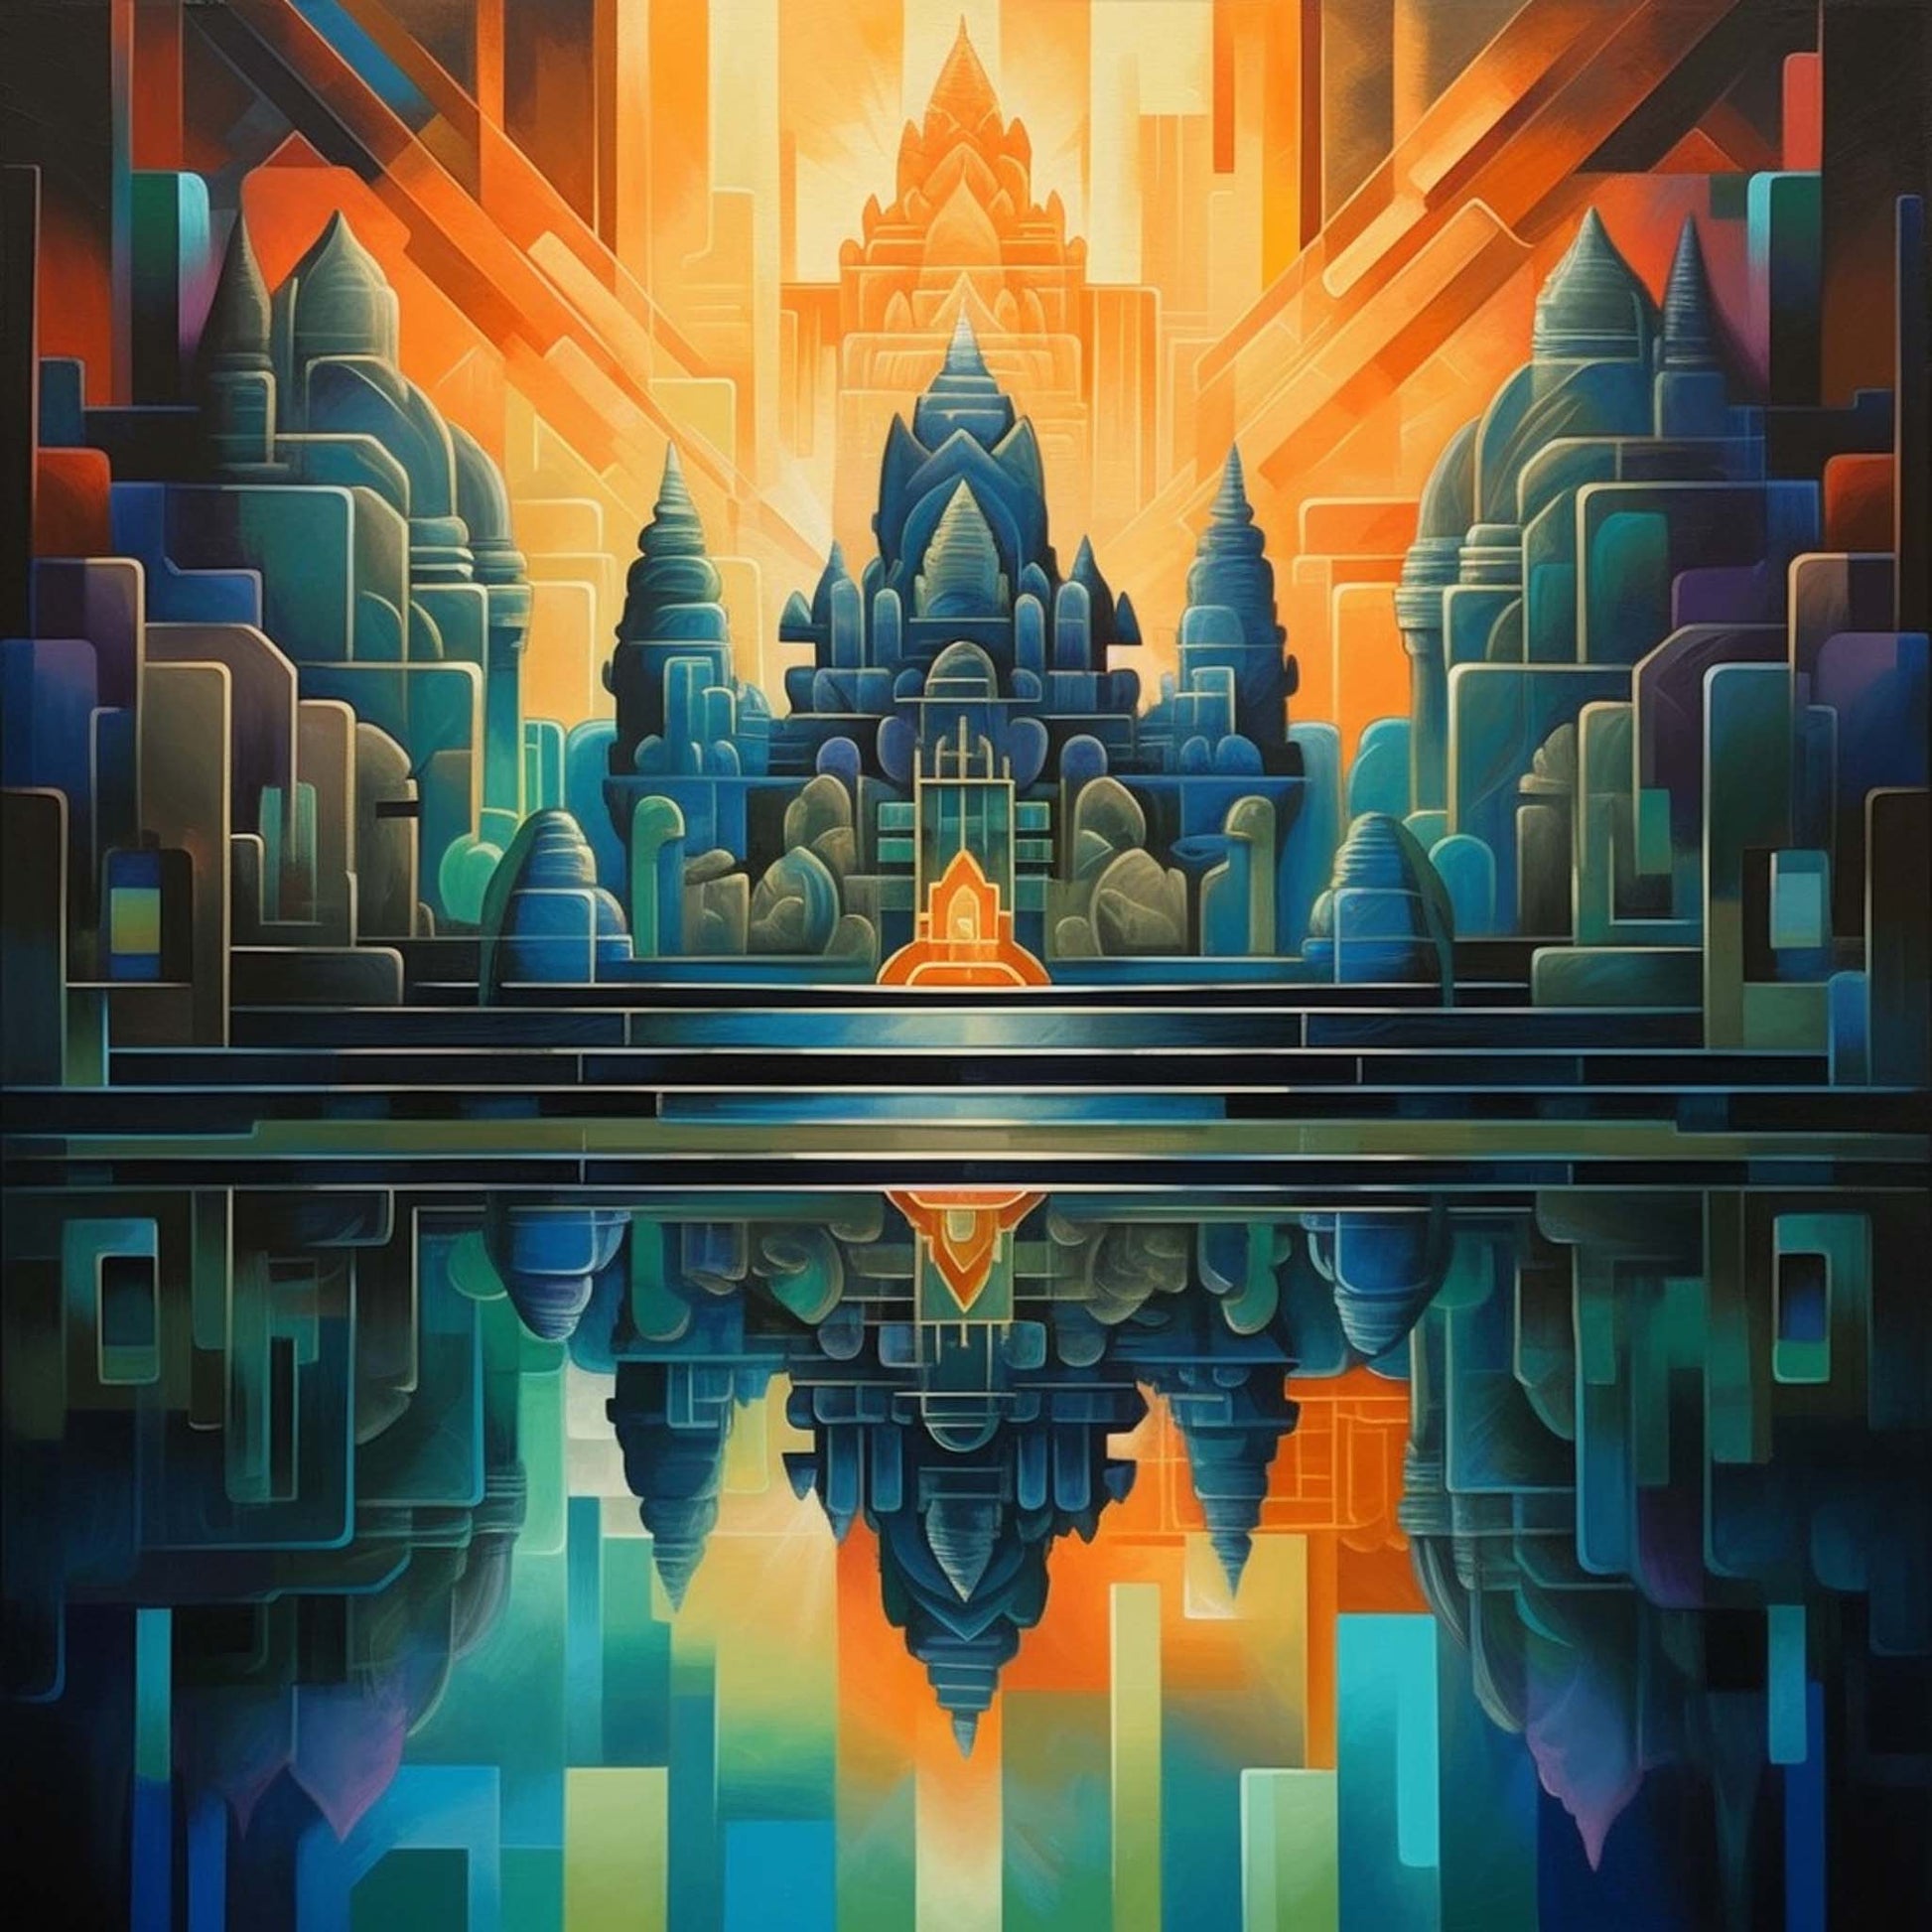 Urbanisto - Angkor Wat - Wandbild in der Stilrichtung des Futurismus